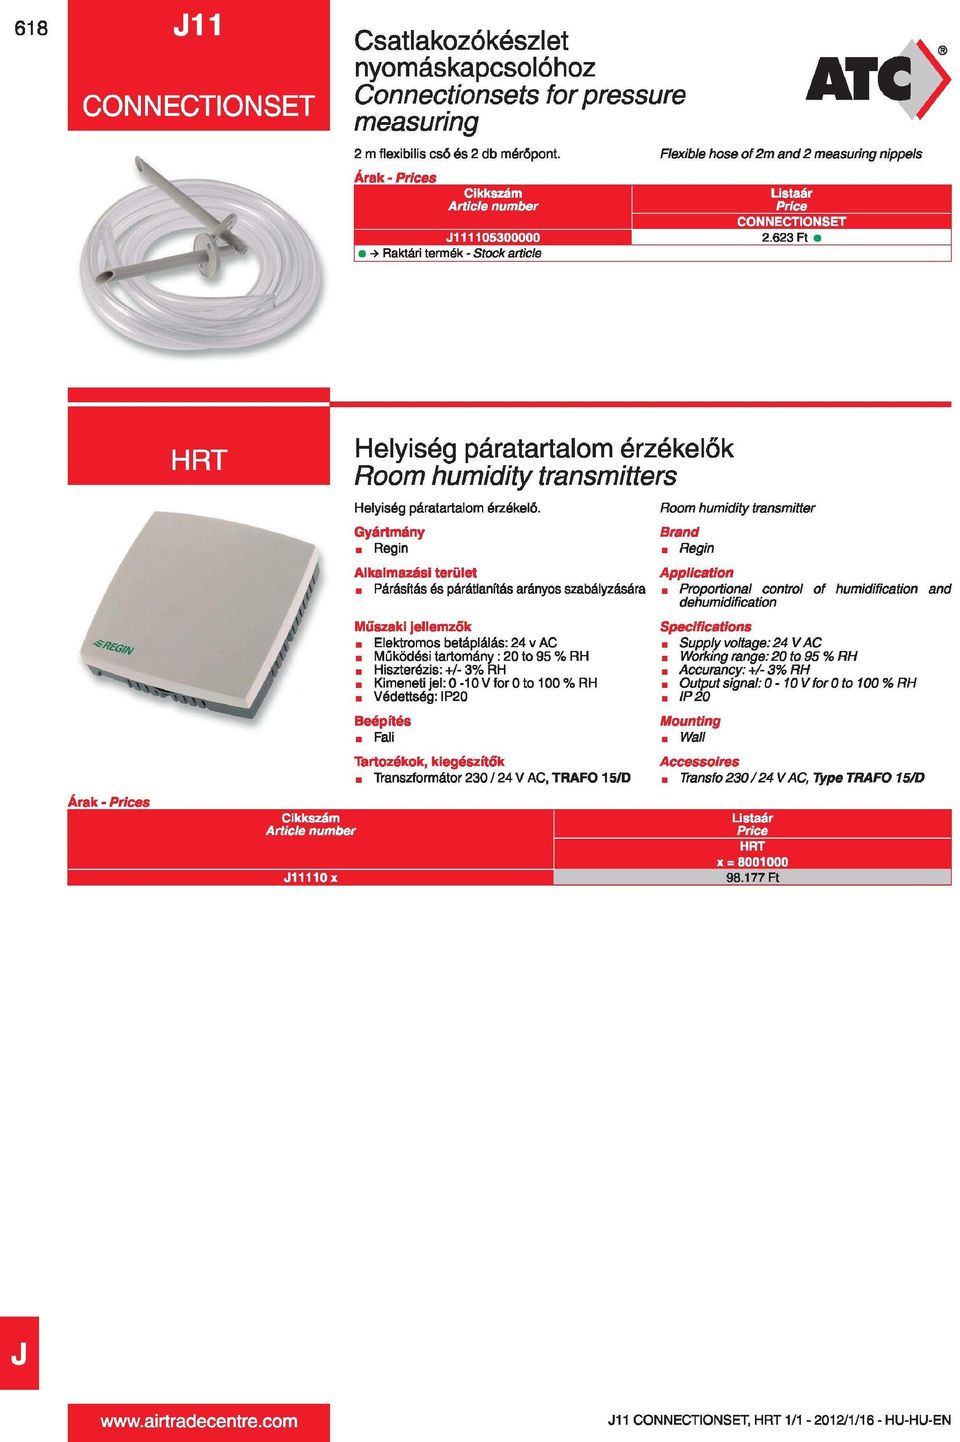 623 Ft -> Raktári termék - Stock article Árak - s HRT J11110x Helyiség páratartalom érzékelők Room humidity transmitters Helyiség páratartalom érzékelő.